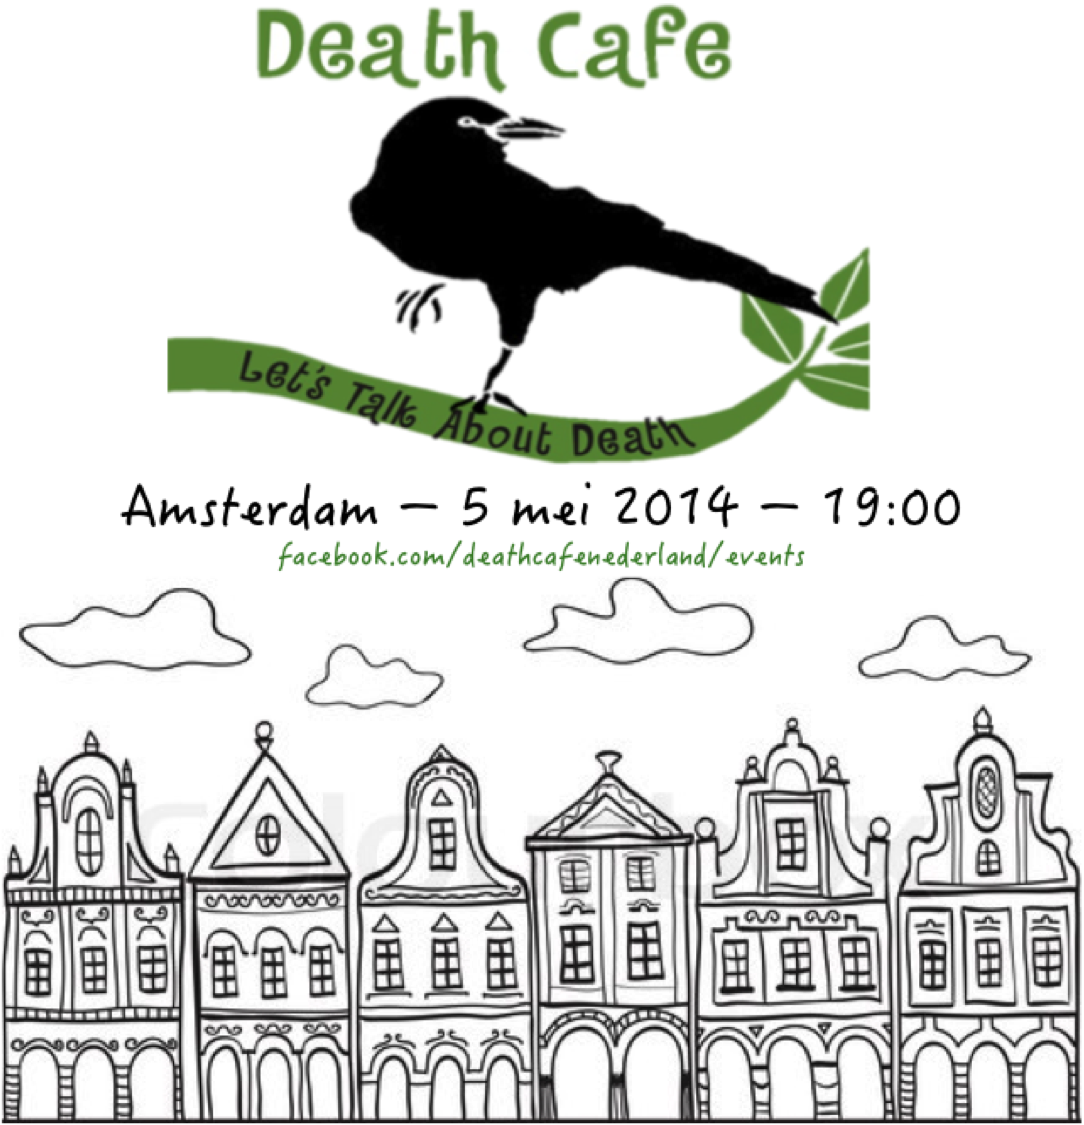 Death Cafe Amsterdam